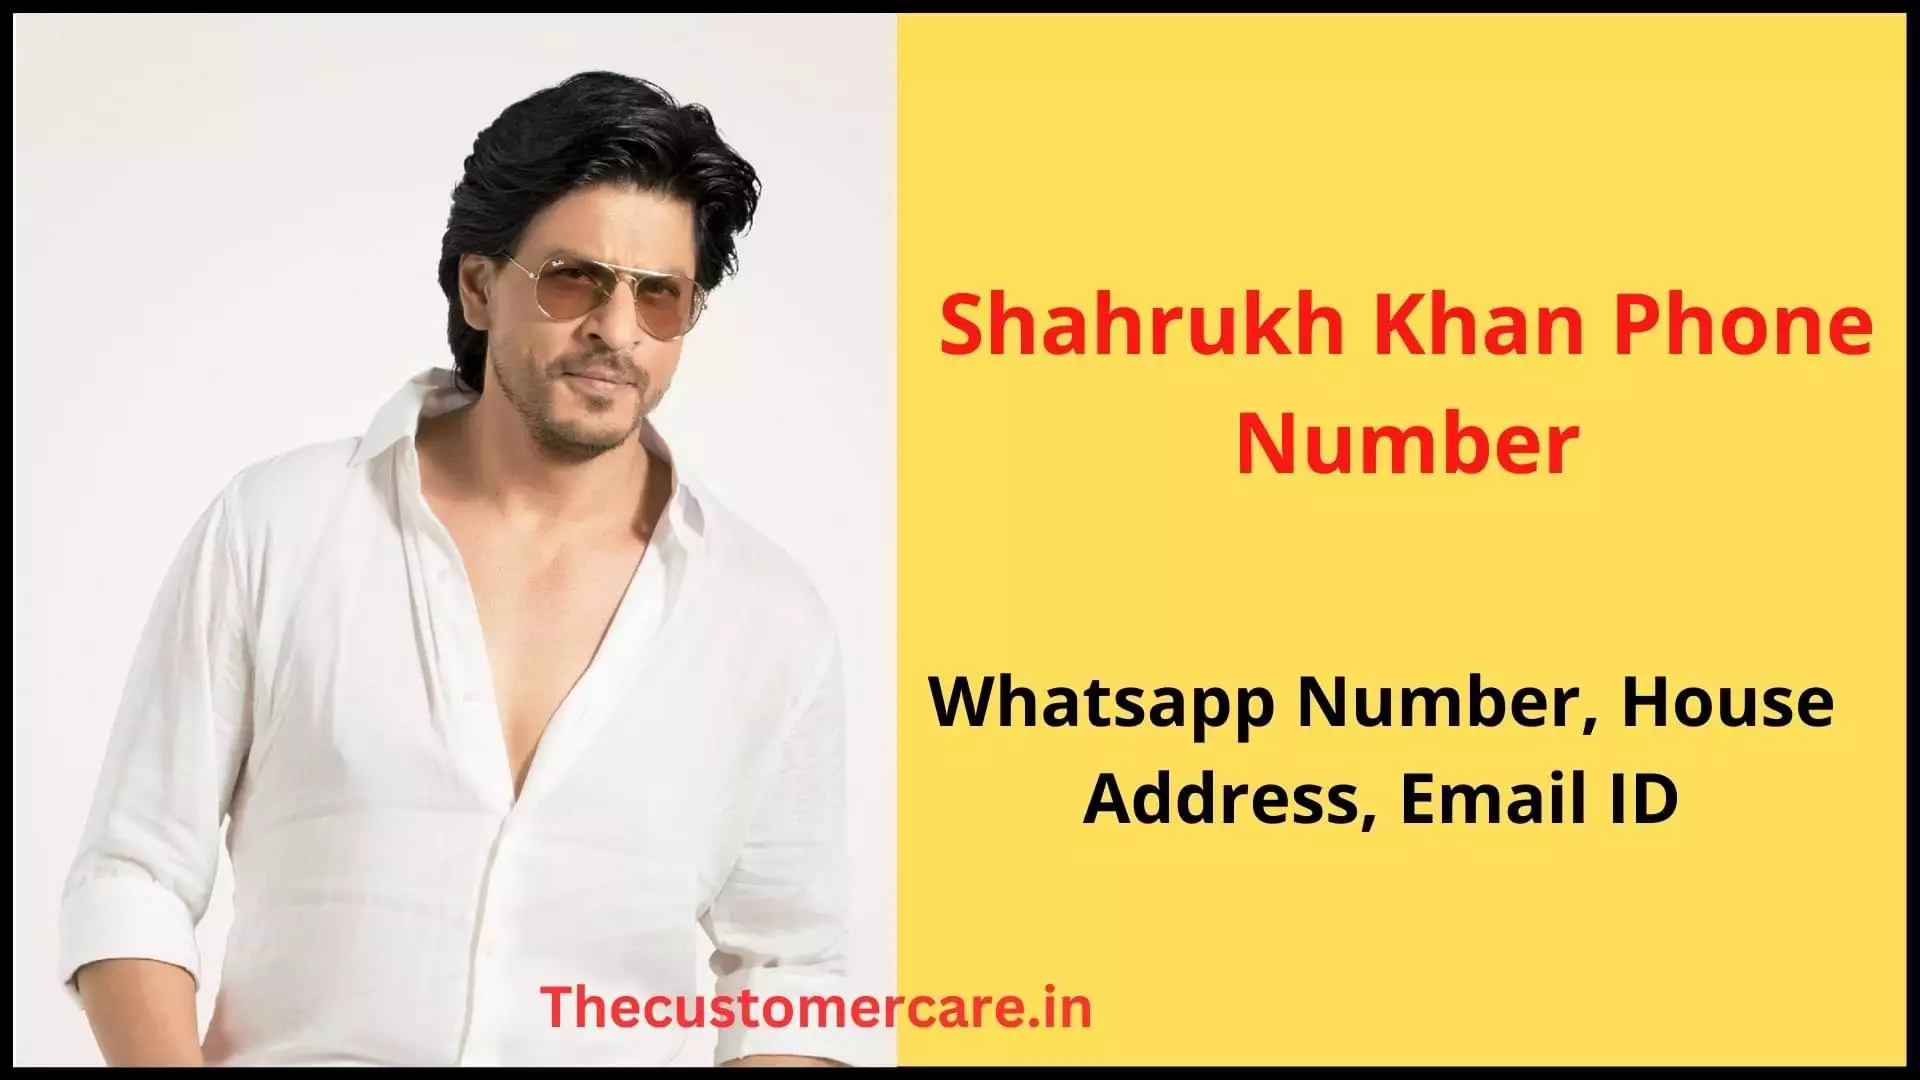 Shahrukh Khan Phone Number